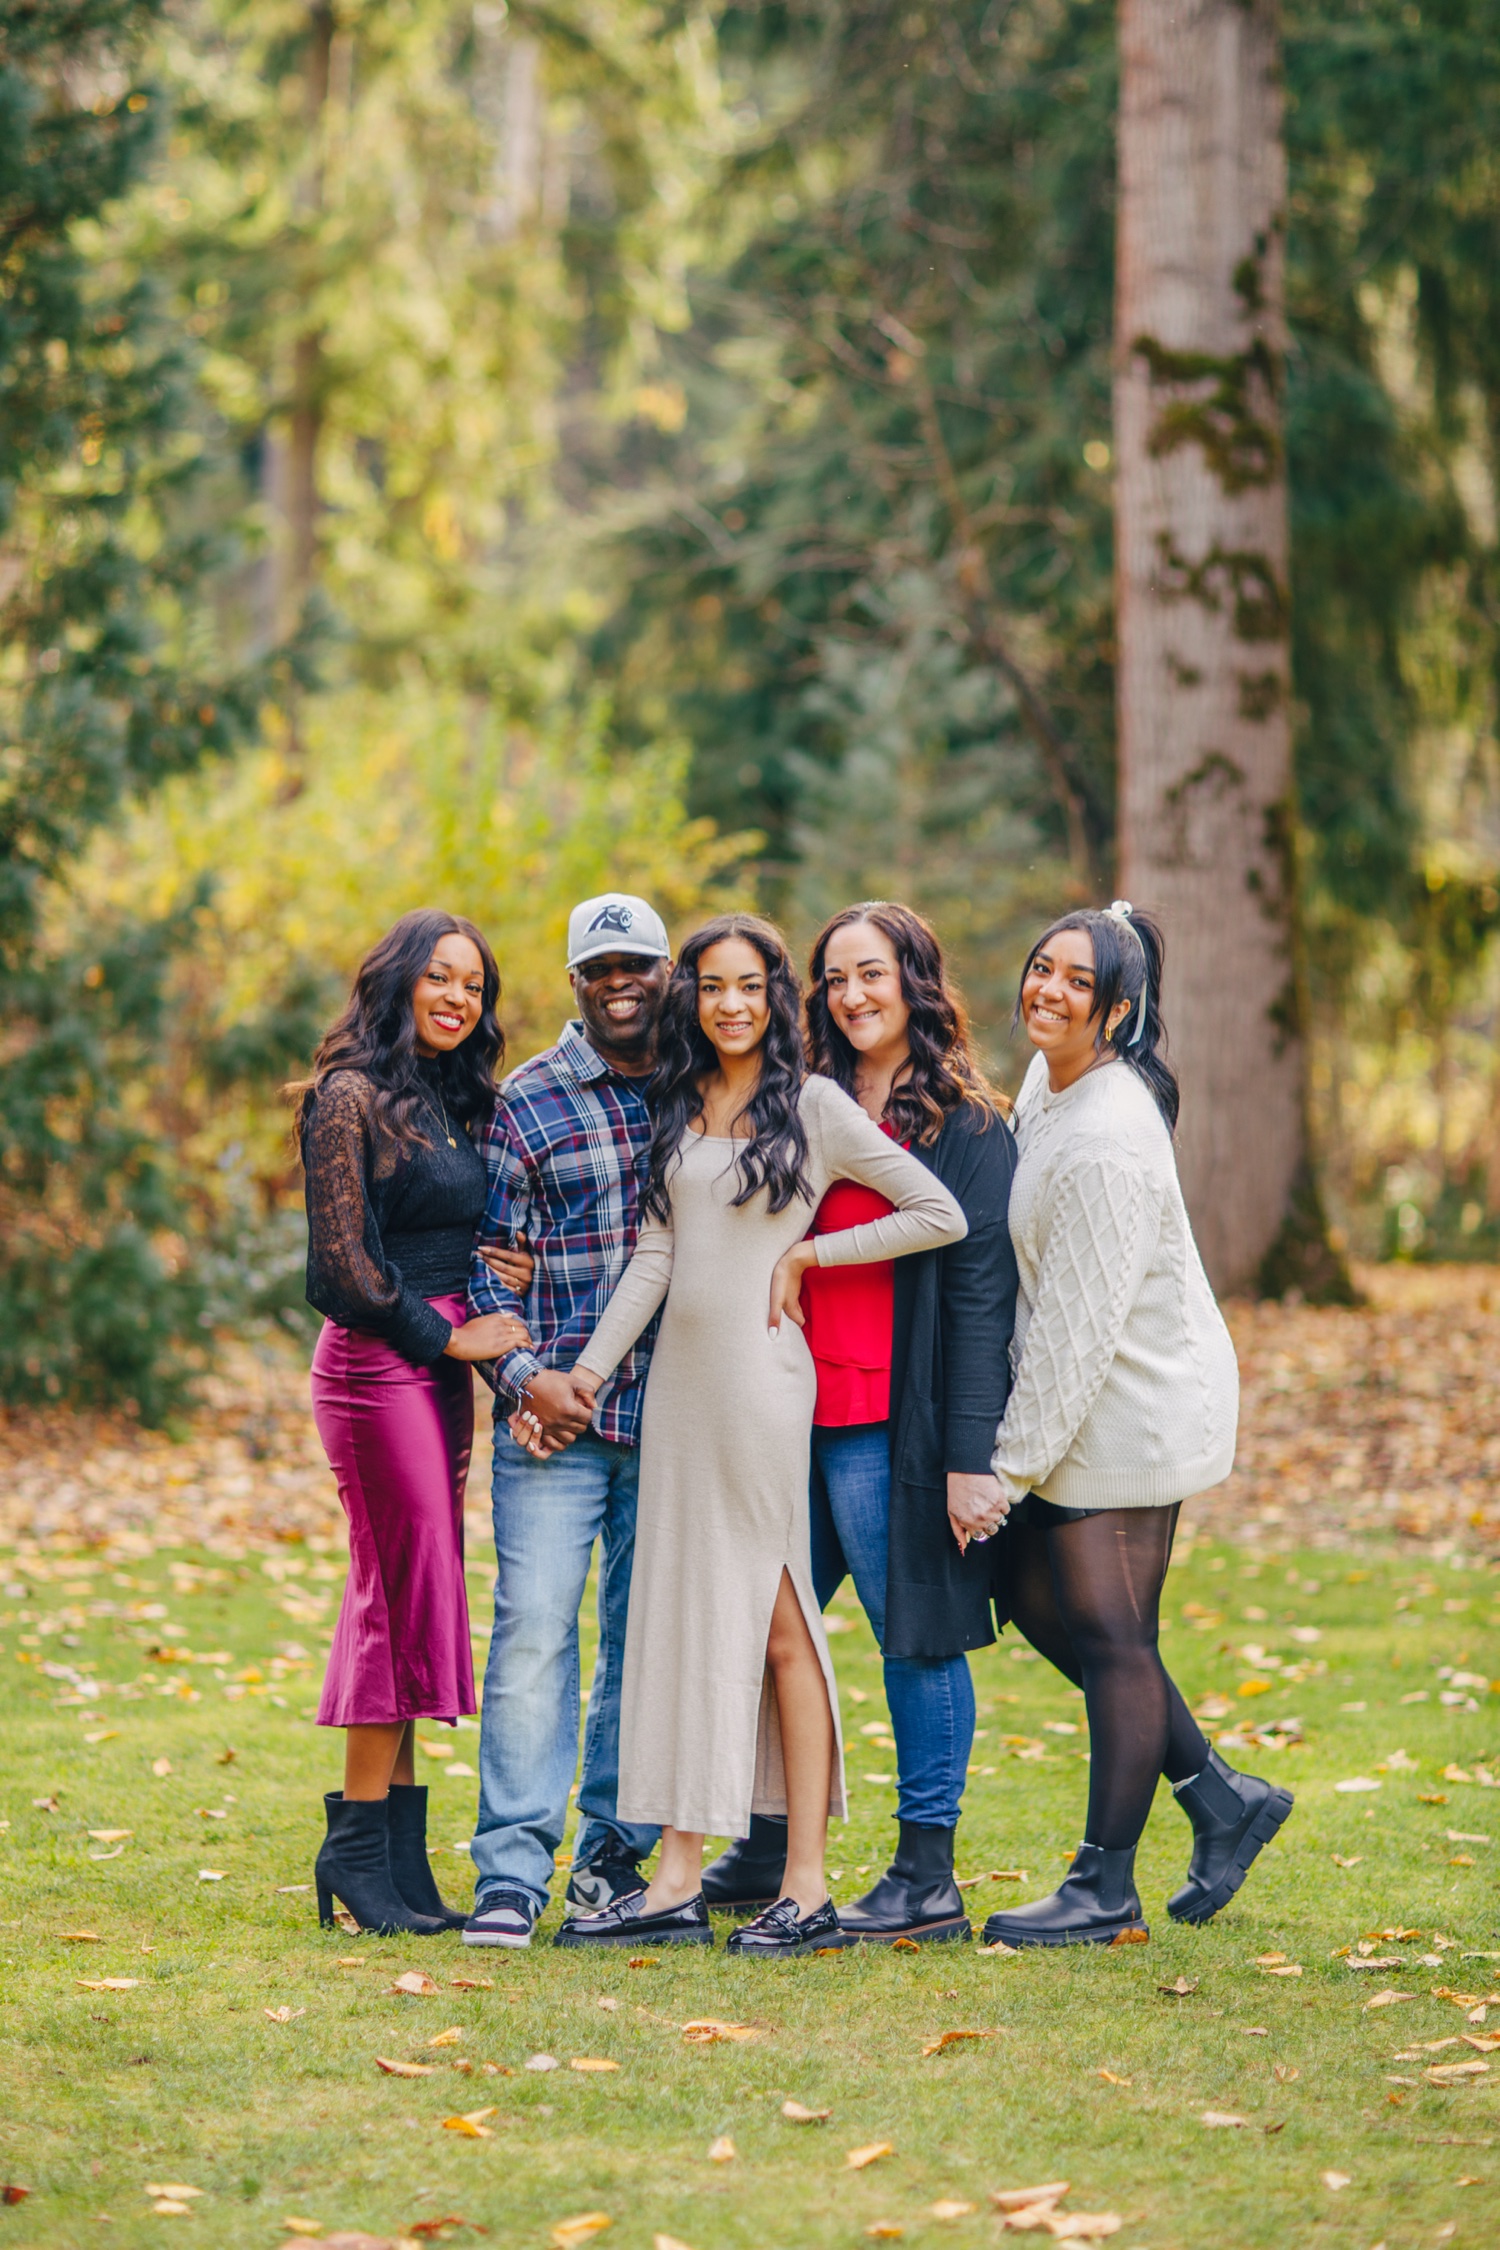 Family Photography. Family of 6 Photo idea. | Family picture poses,  Photography poses family, Family portrait poses